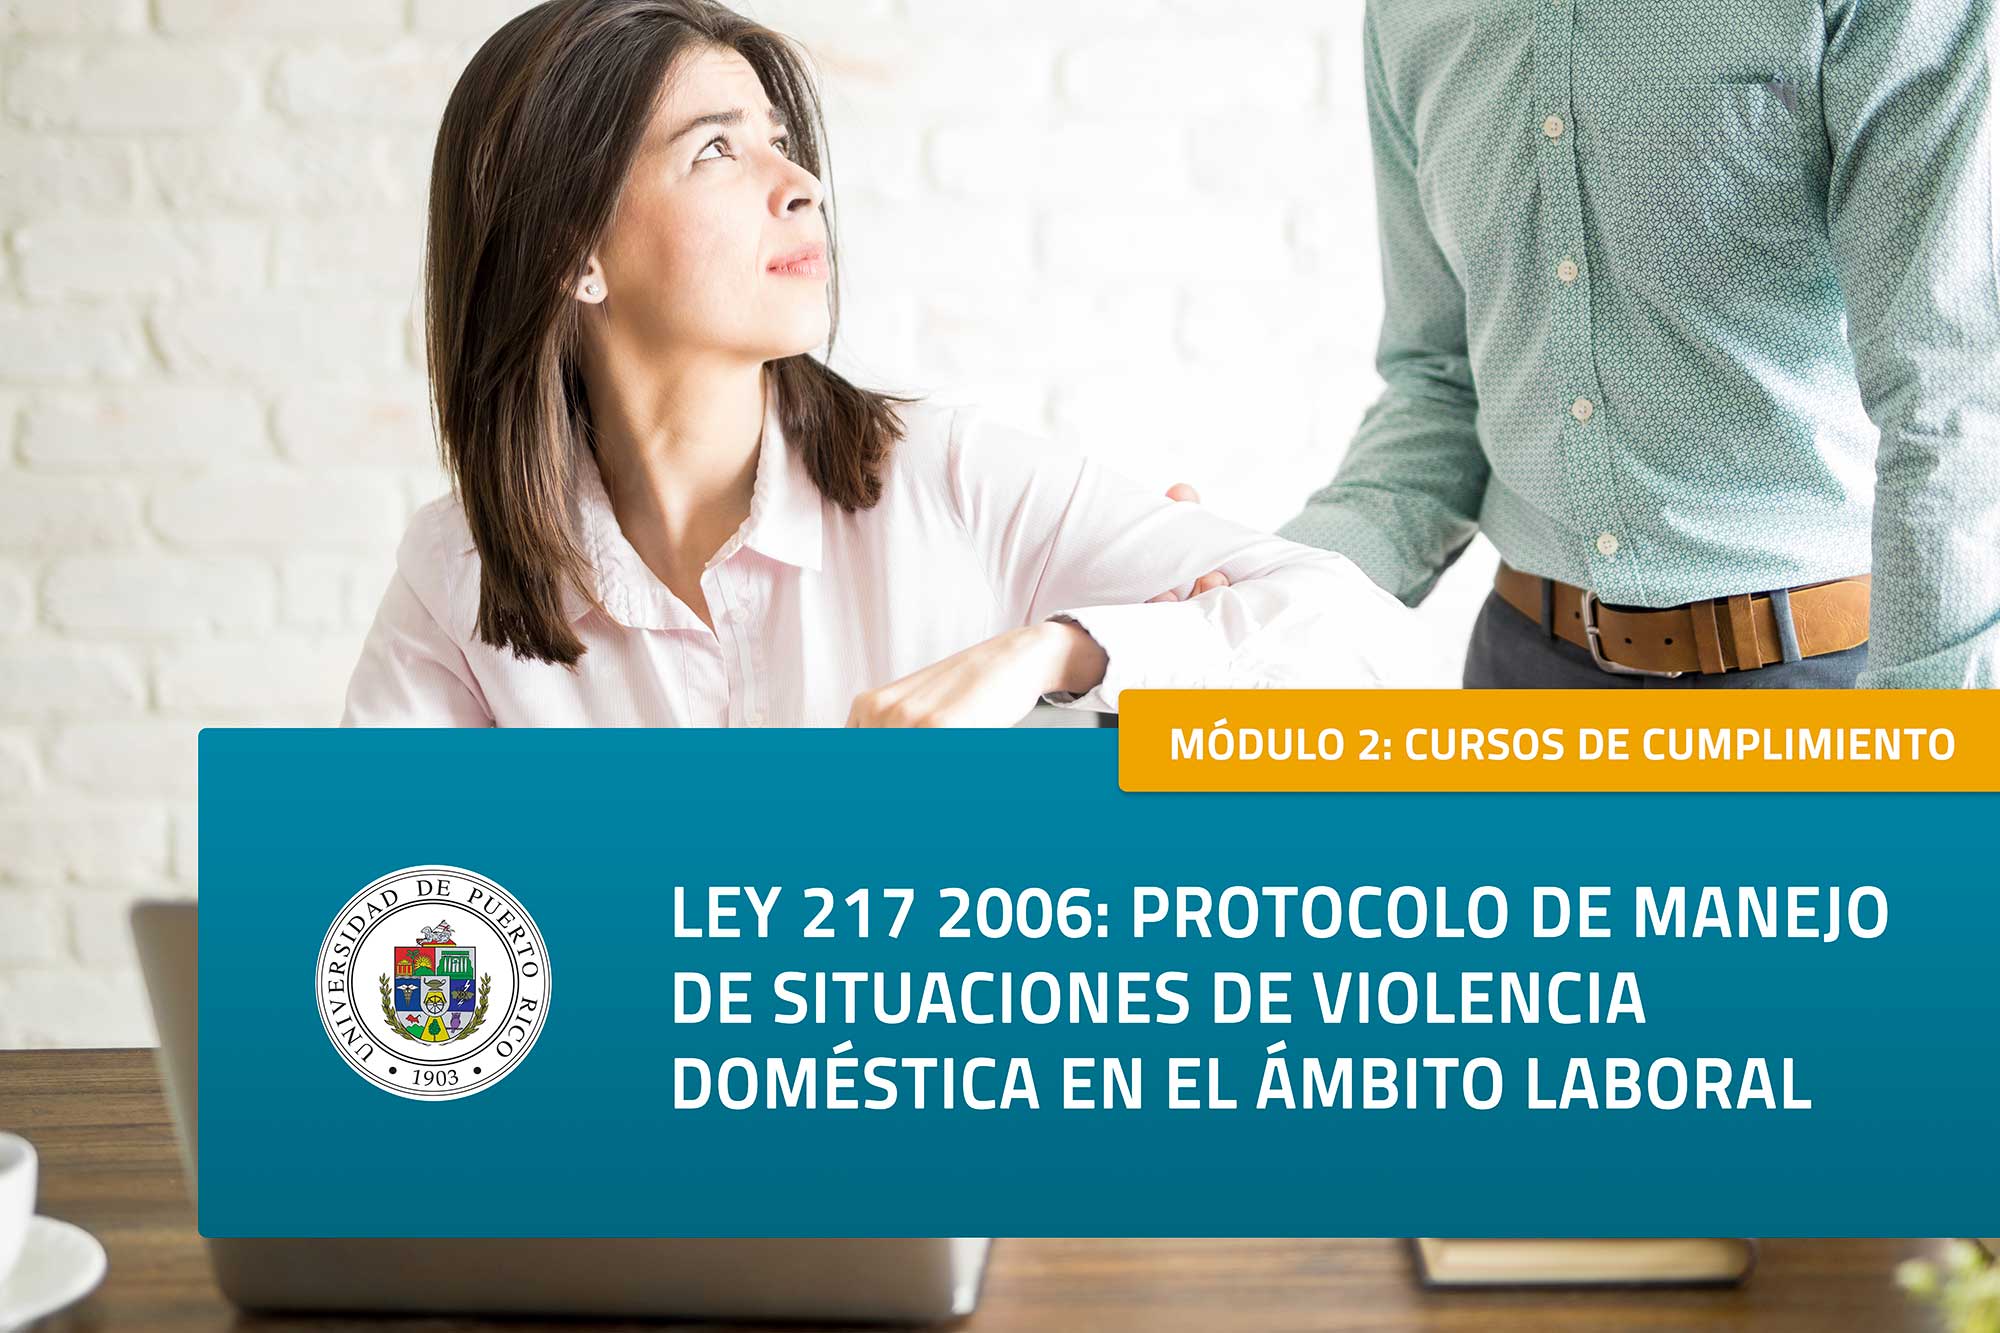 Módulo 2 Cumplimiento: Ley Núm. 217-2006 Protocolo de Manejo de Situaciones de Violencia Doméstica en el Ámbito Laboral